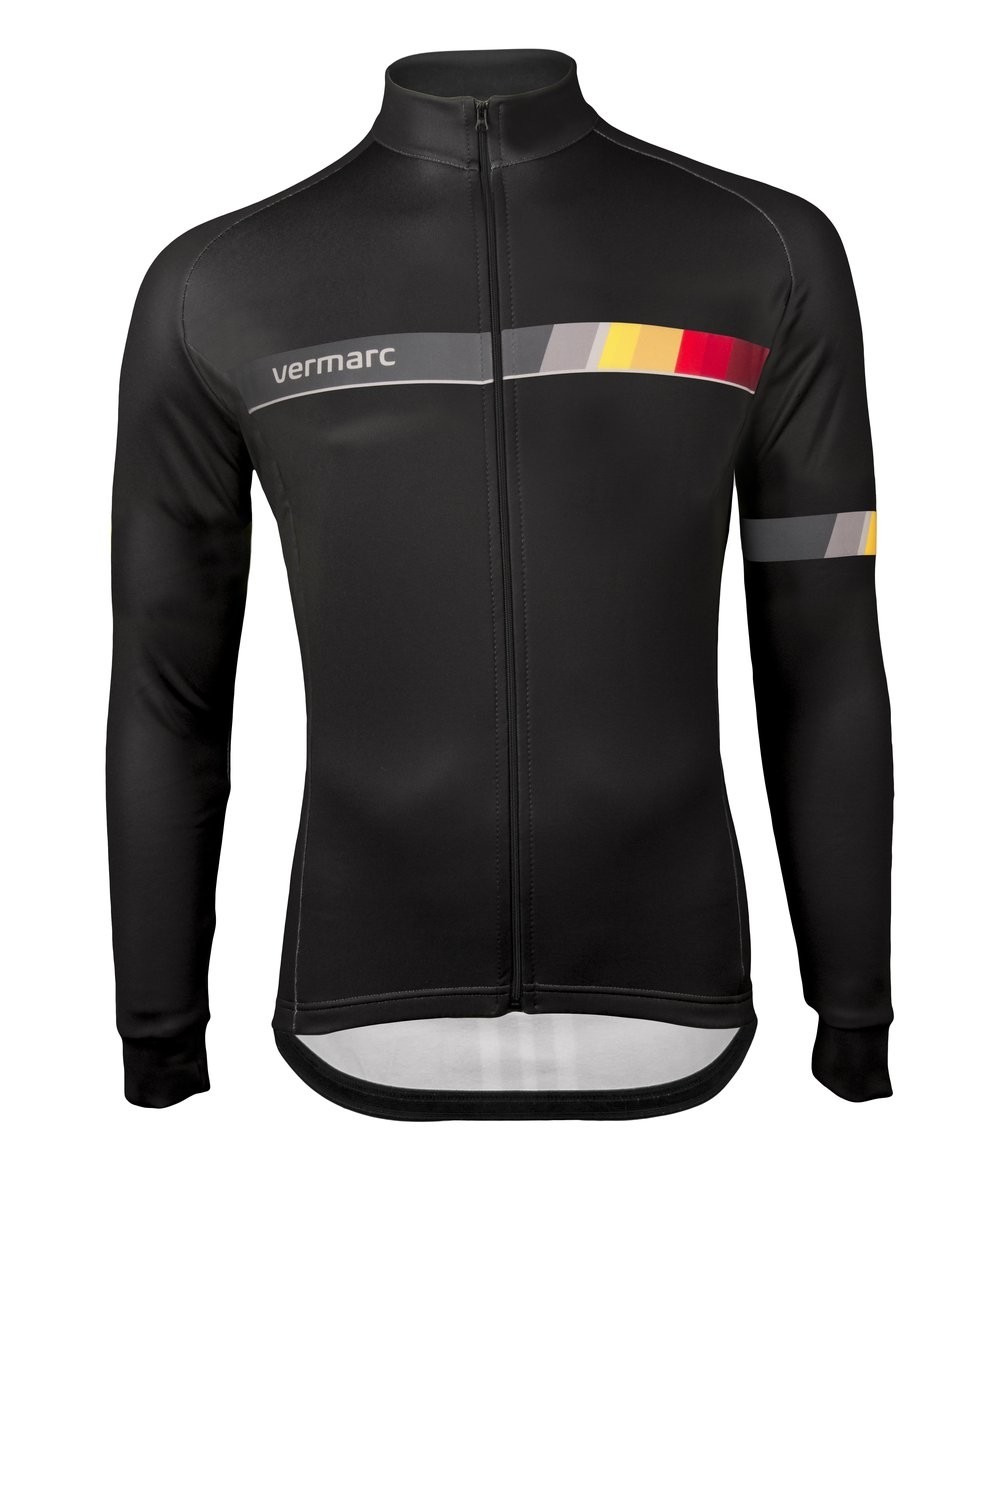 Vermarc belgica sp.l maillot de cyclisme manches longues noir